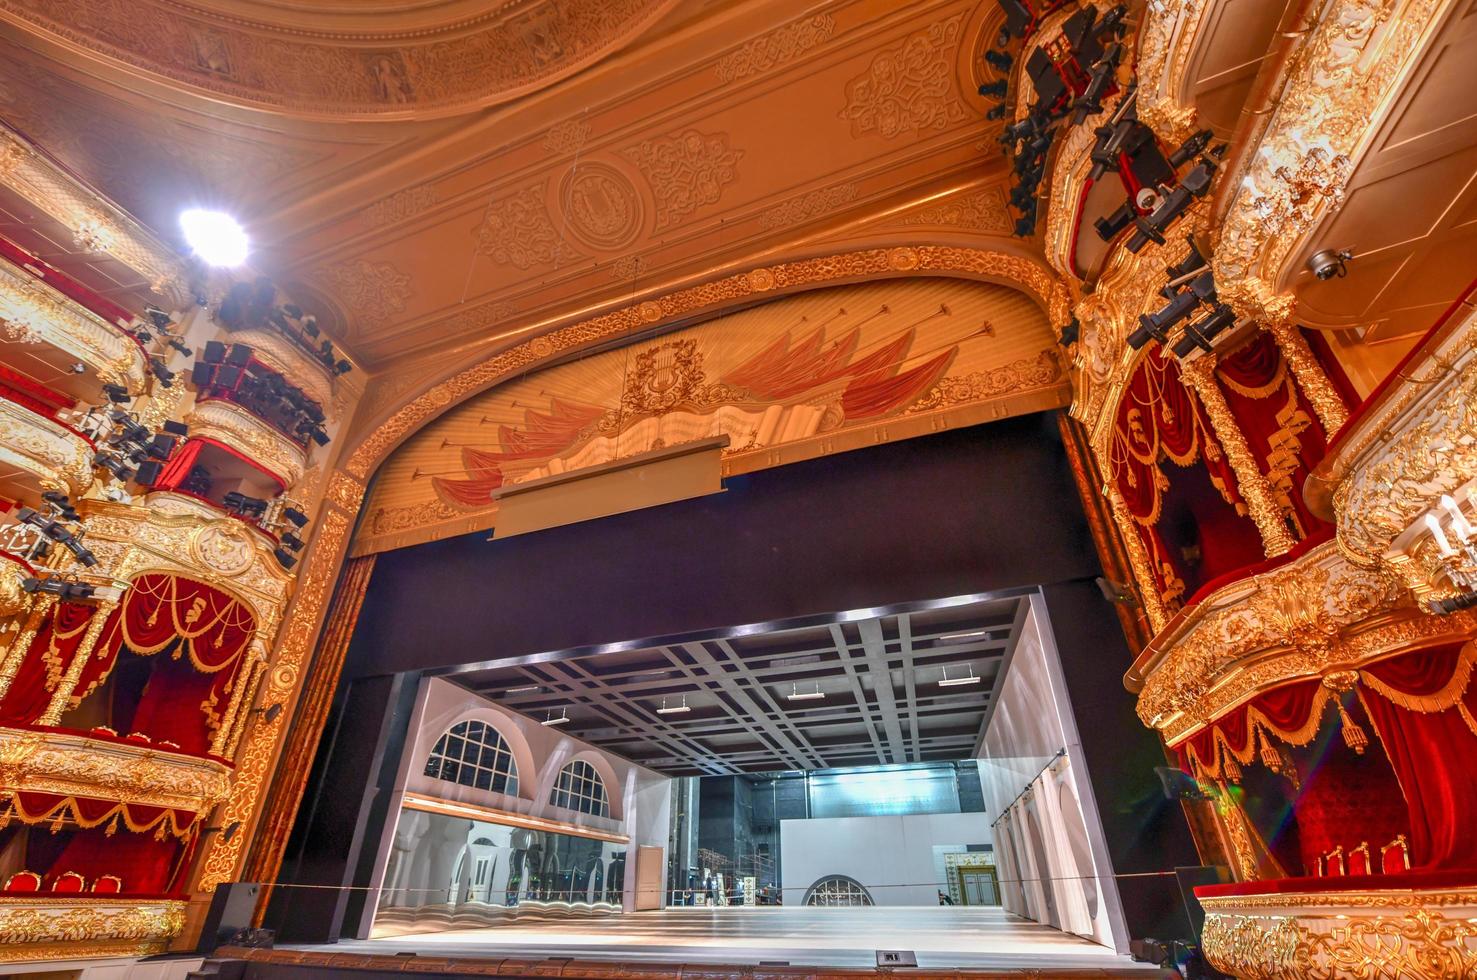 moscou, russie - 27 juin 2018 - le théâtre bolchoï, un théâtre historique de moscou, russie, qui organise des spectacles de ballet et d'opéra. photo